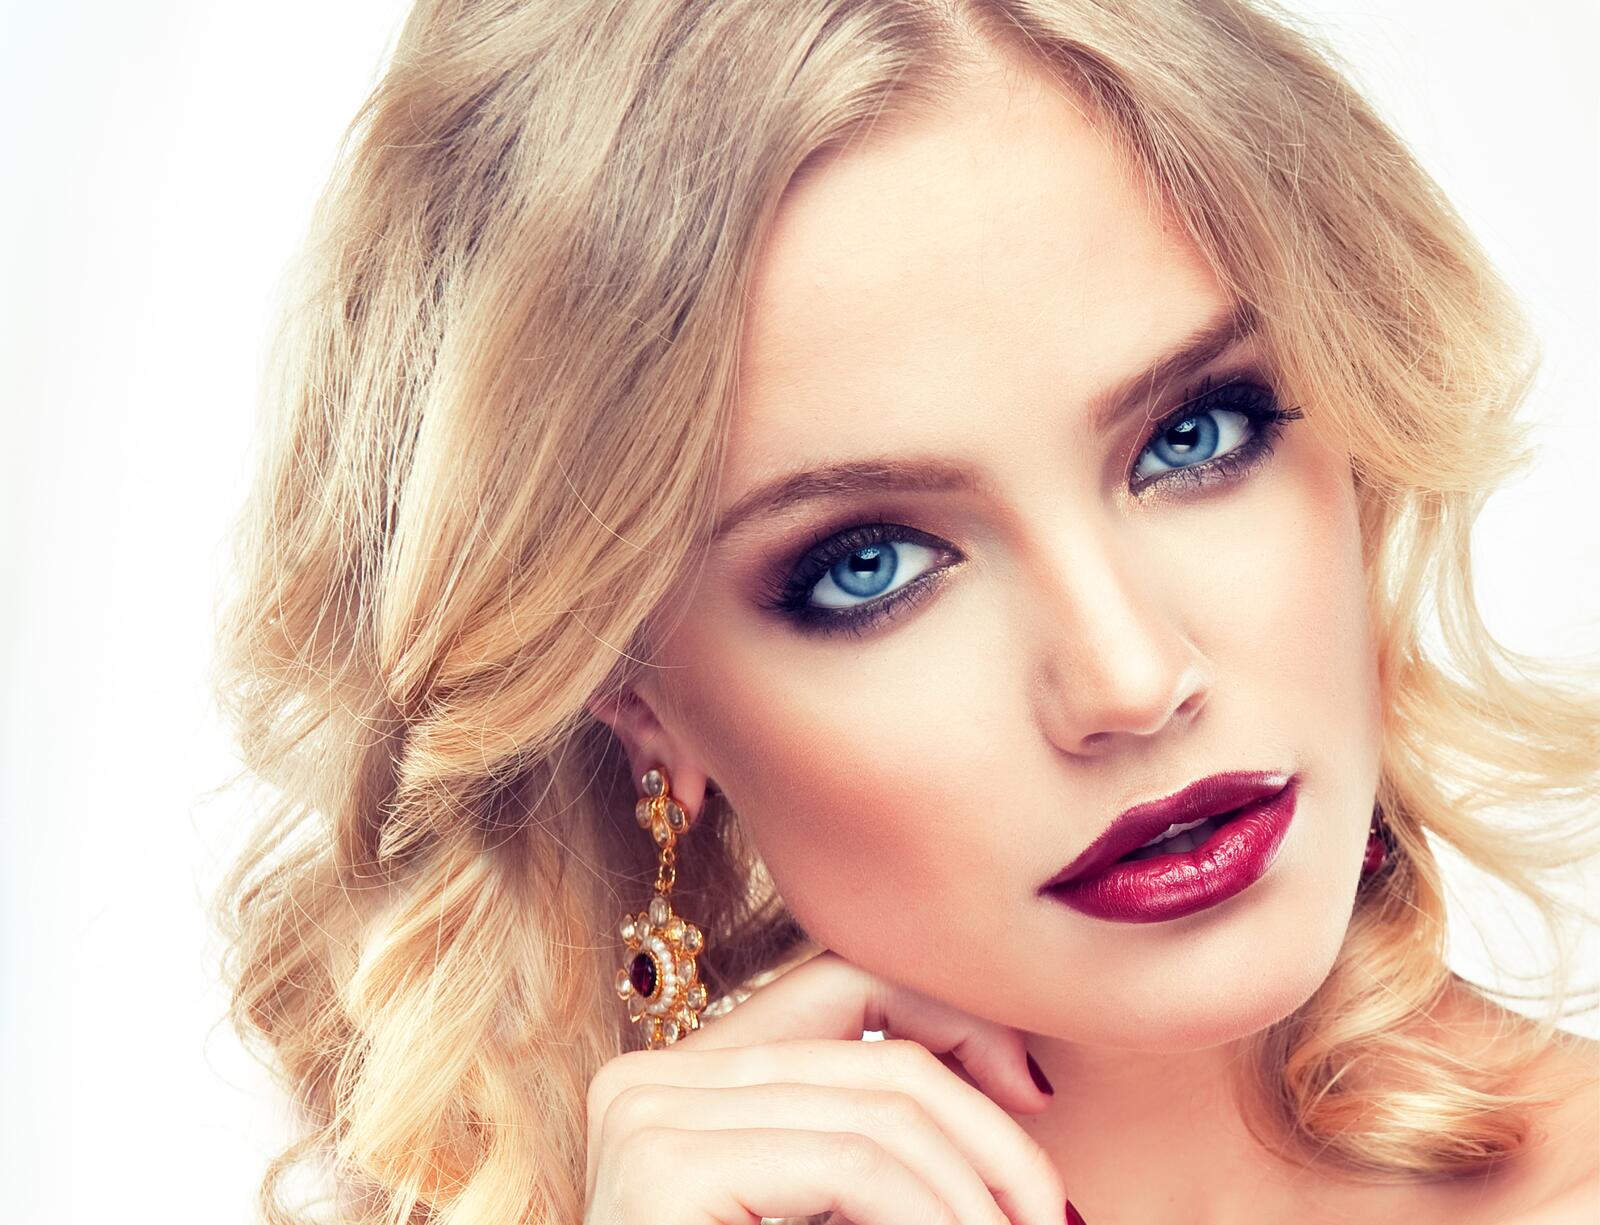 Wallpapers model make-up blonde on the desktop